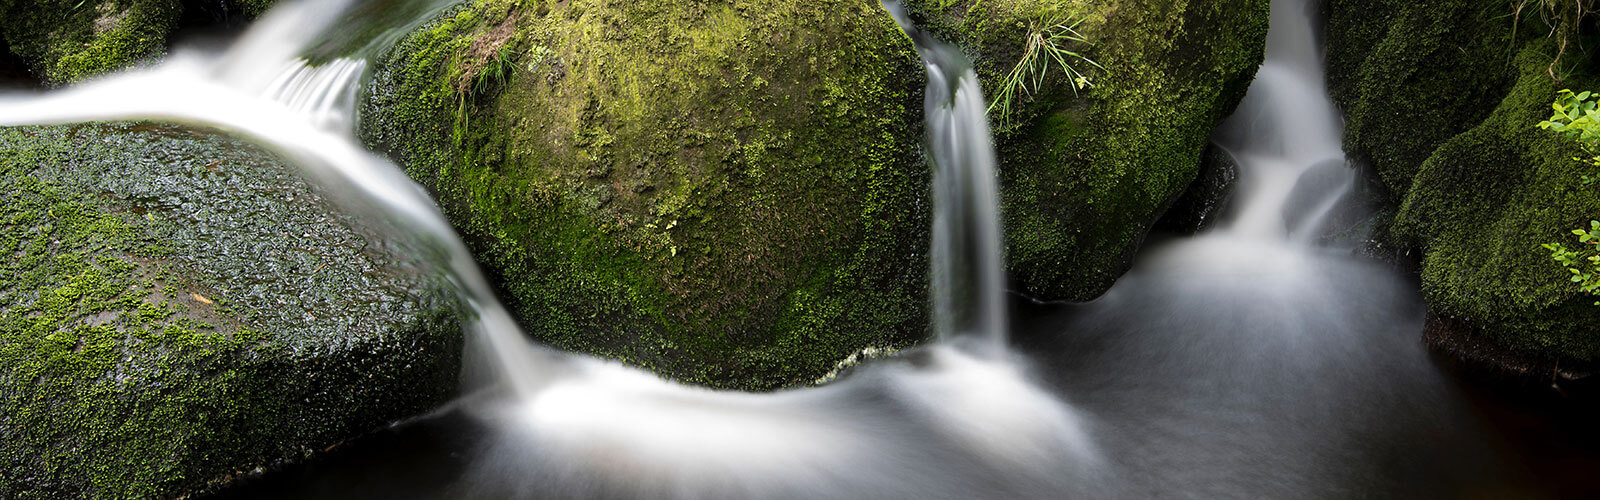 Wasserfall Bach Steine